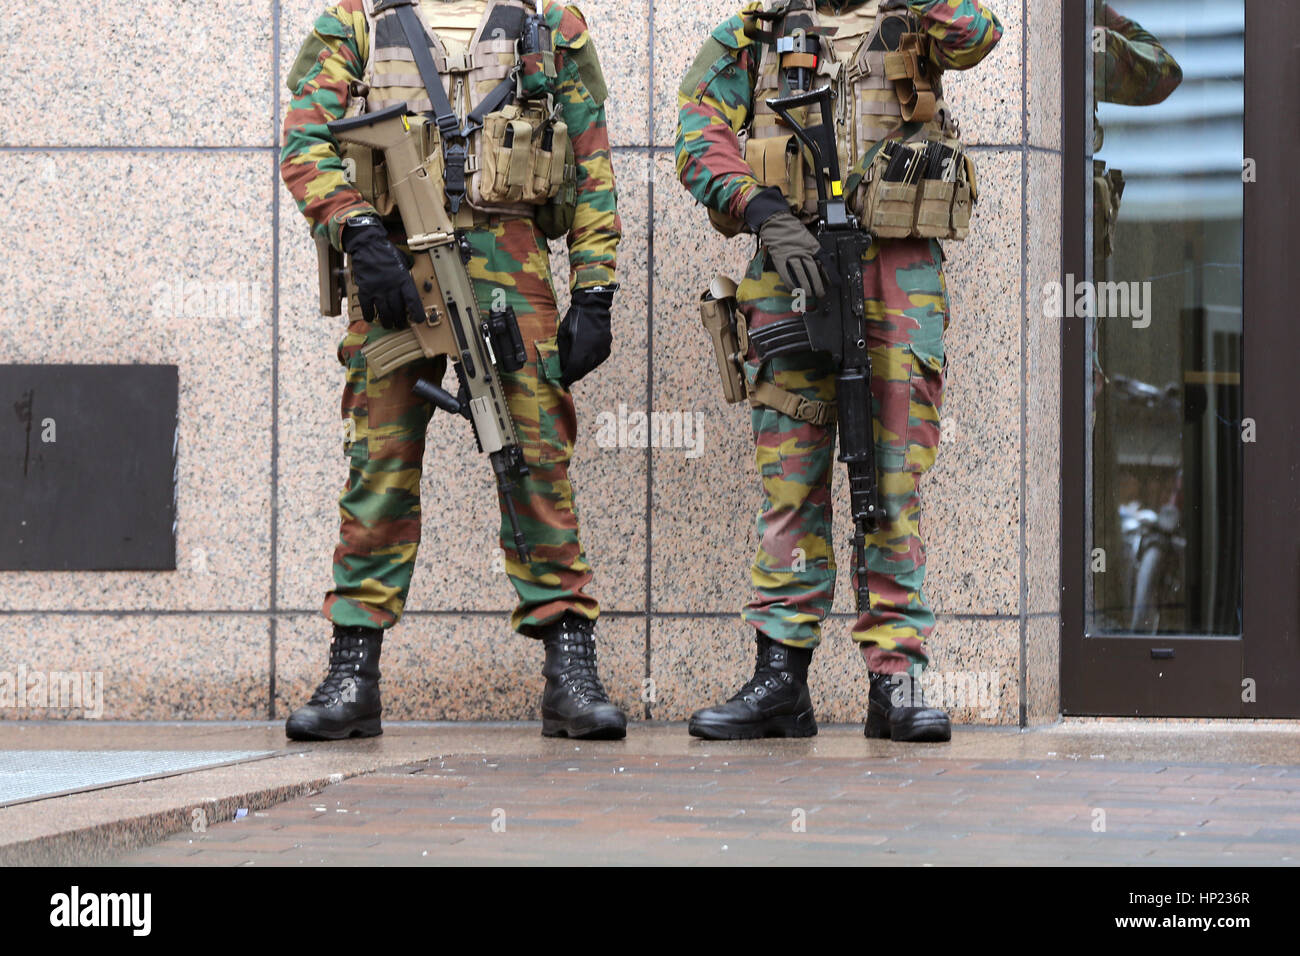 Guardia de soldados belgas de las instituciones europeas. La gente irreconocible en uniformes. Las medidas de seguridad tras los atentados de Bruselas de 2016. Sólo las piernas. Foto de stock